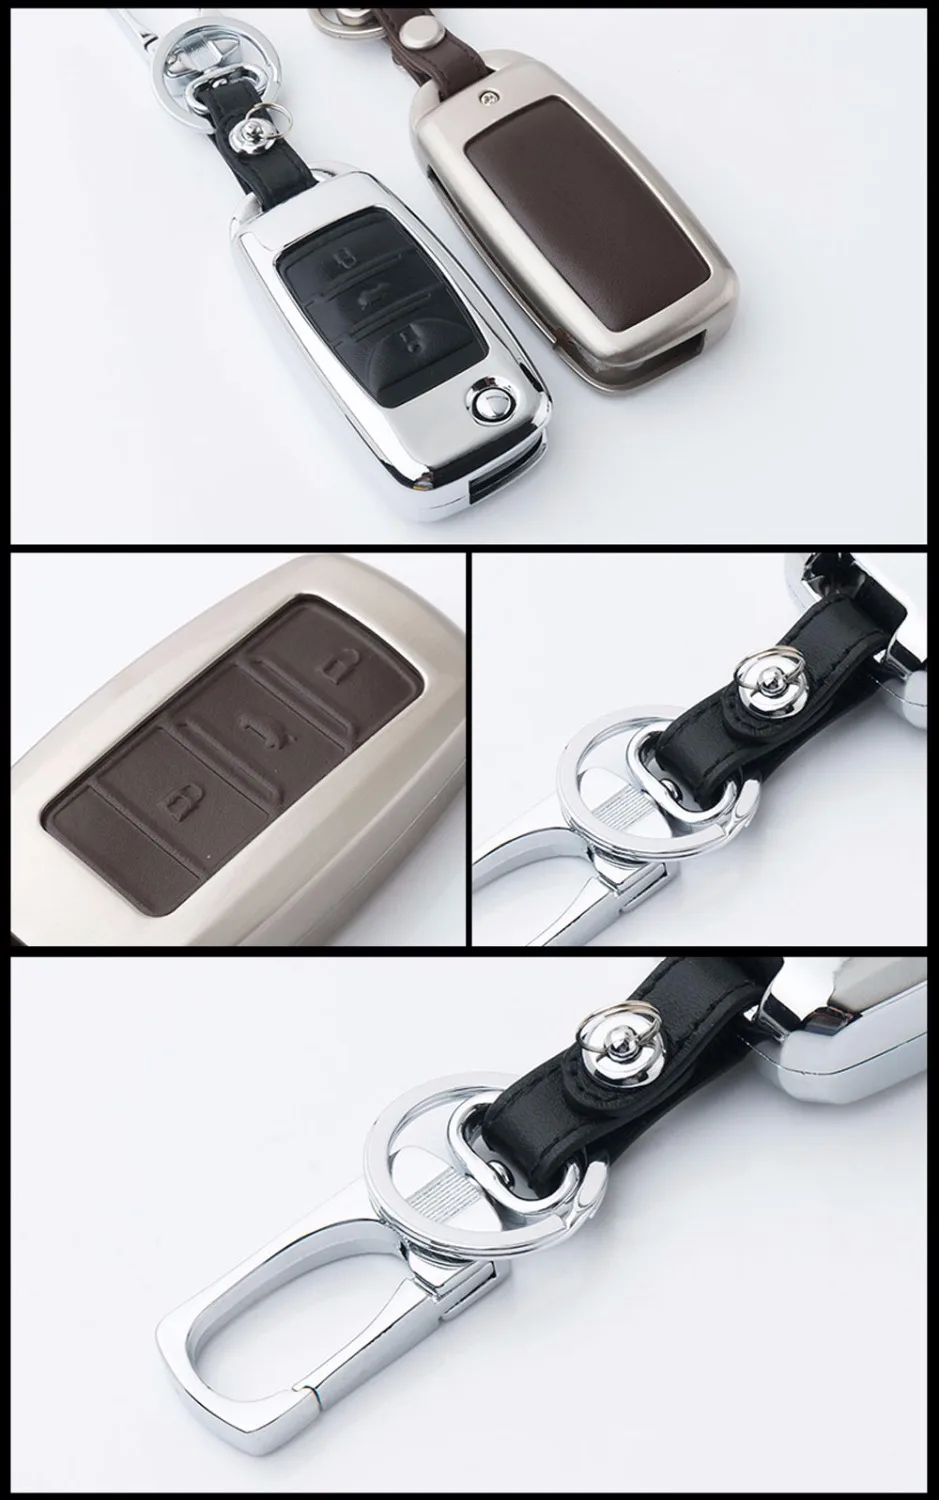 Цинковый сплав+ кожаный чехол для ключей автомобиля для Changan eado CS35 Raeton CS15 V3 V5 V7 брелок с дистанционным управлением Брелок оболочка защитная сумка